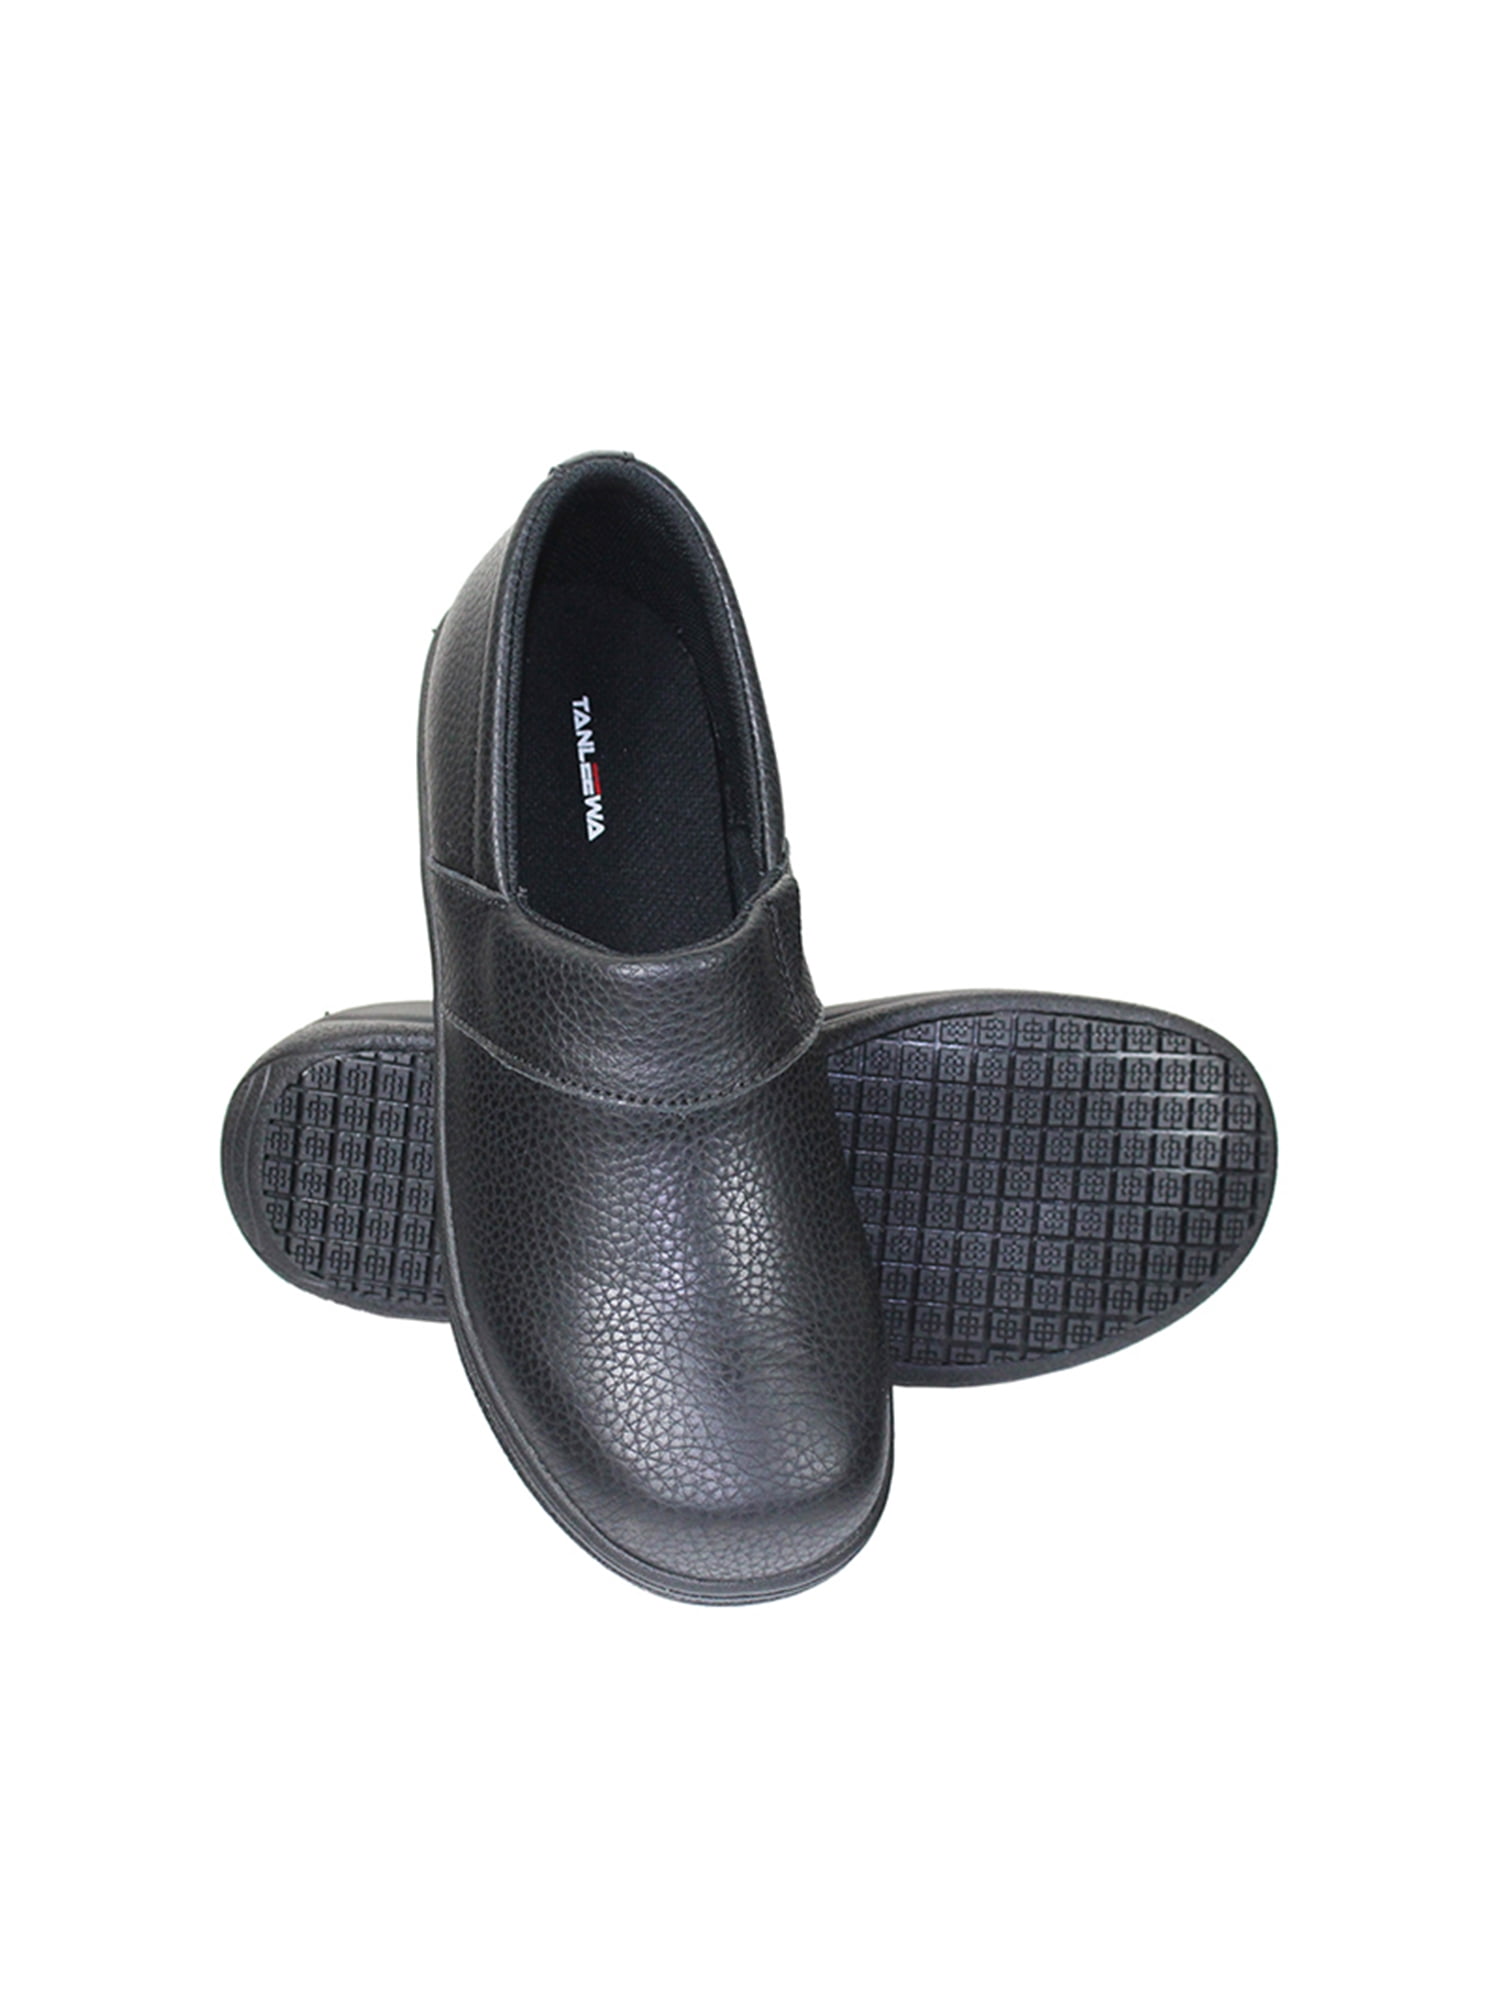 Tanleewa Slip Resistant Leather 